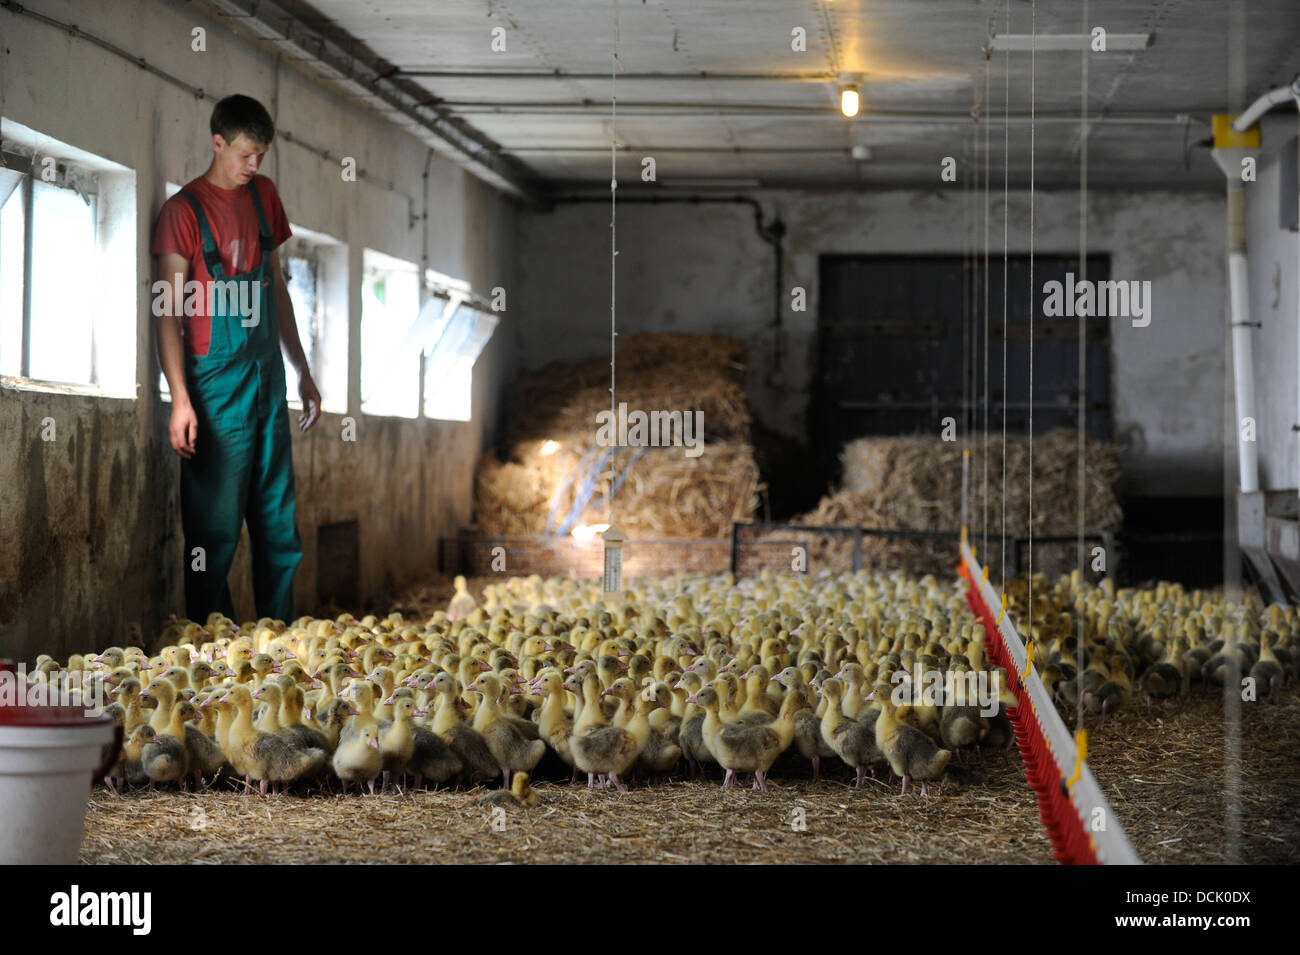 Alemania, Saxonia, Wermsdorf, gansos de cría y producción de carne abajo, Gosling, gansos jóvenes en estable Foto de stock